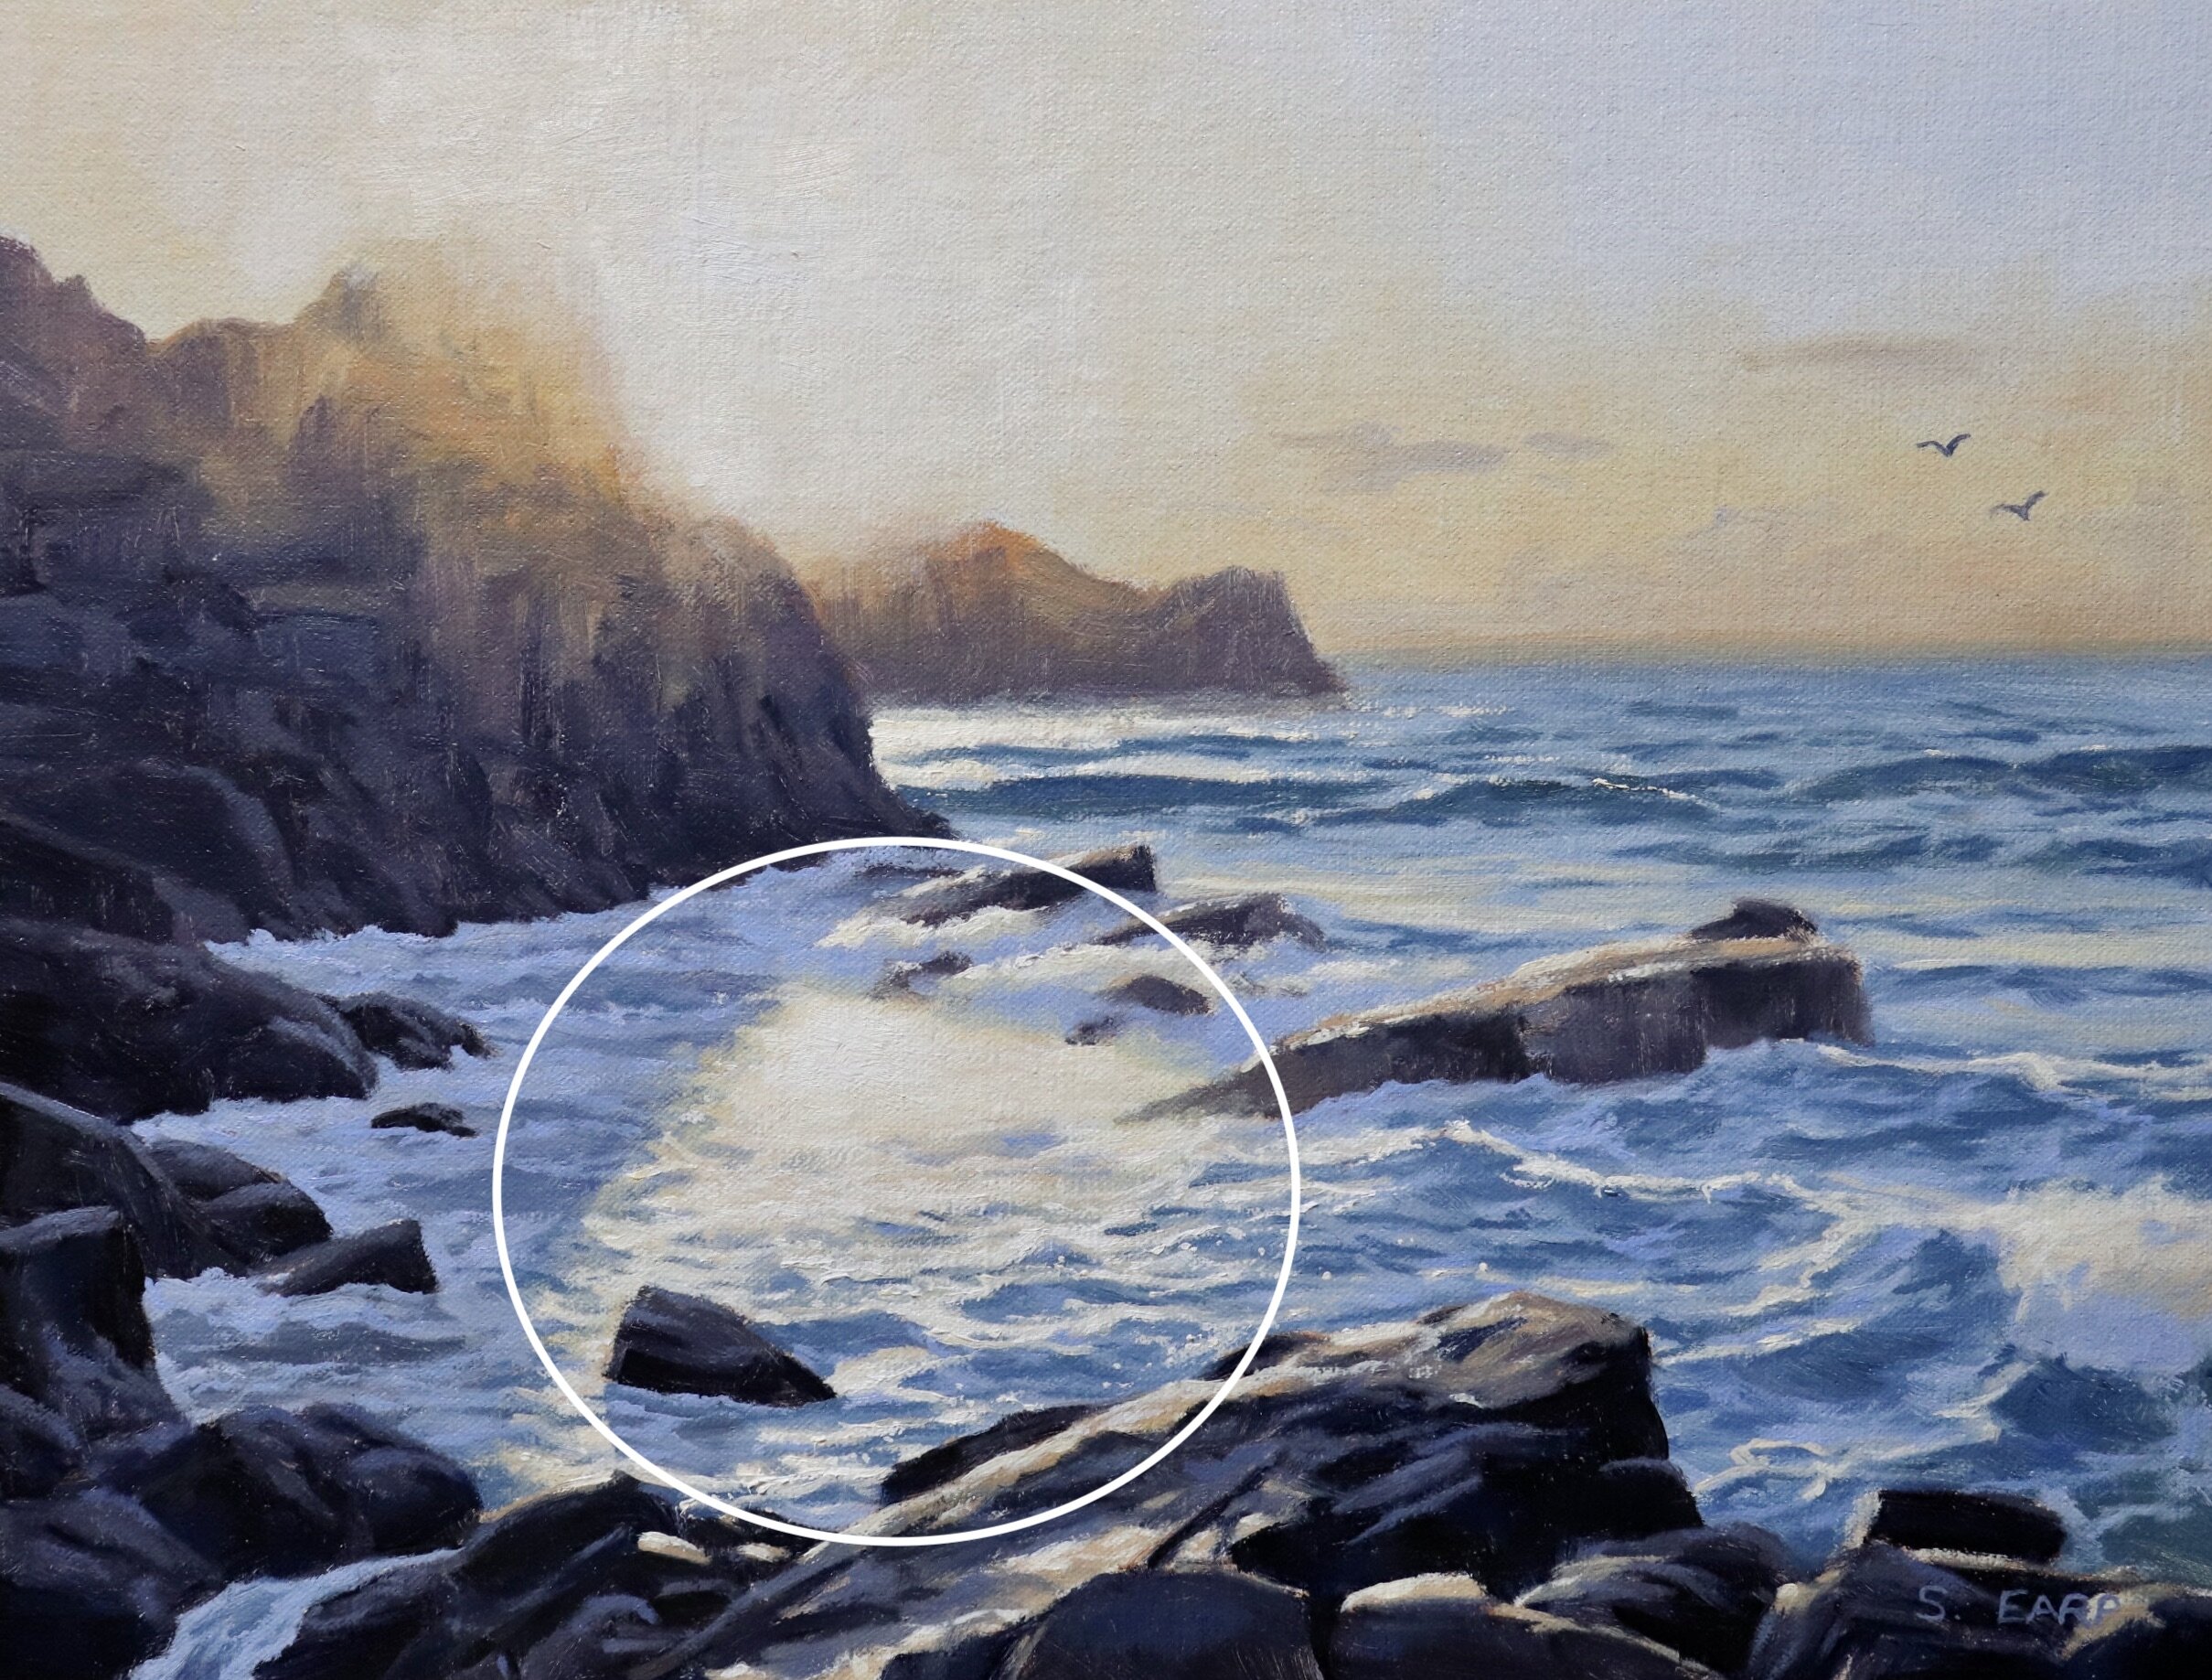 Sunset - Port Soif - Samuel Earp - oil painting copy 2.jpeg